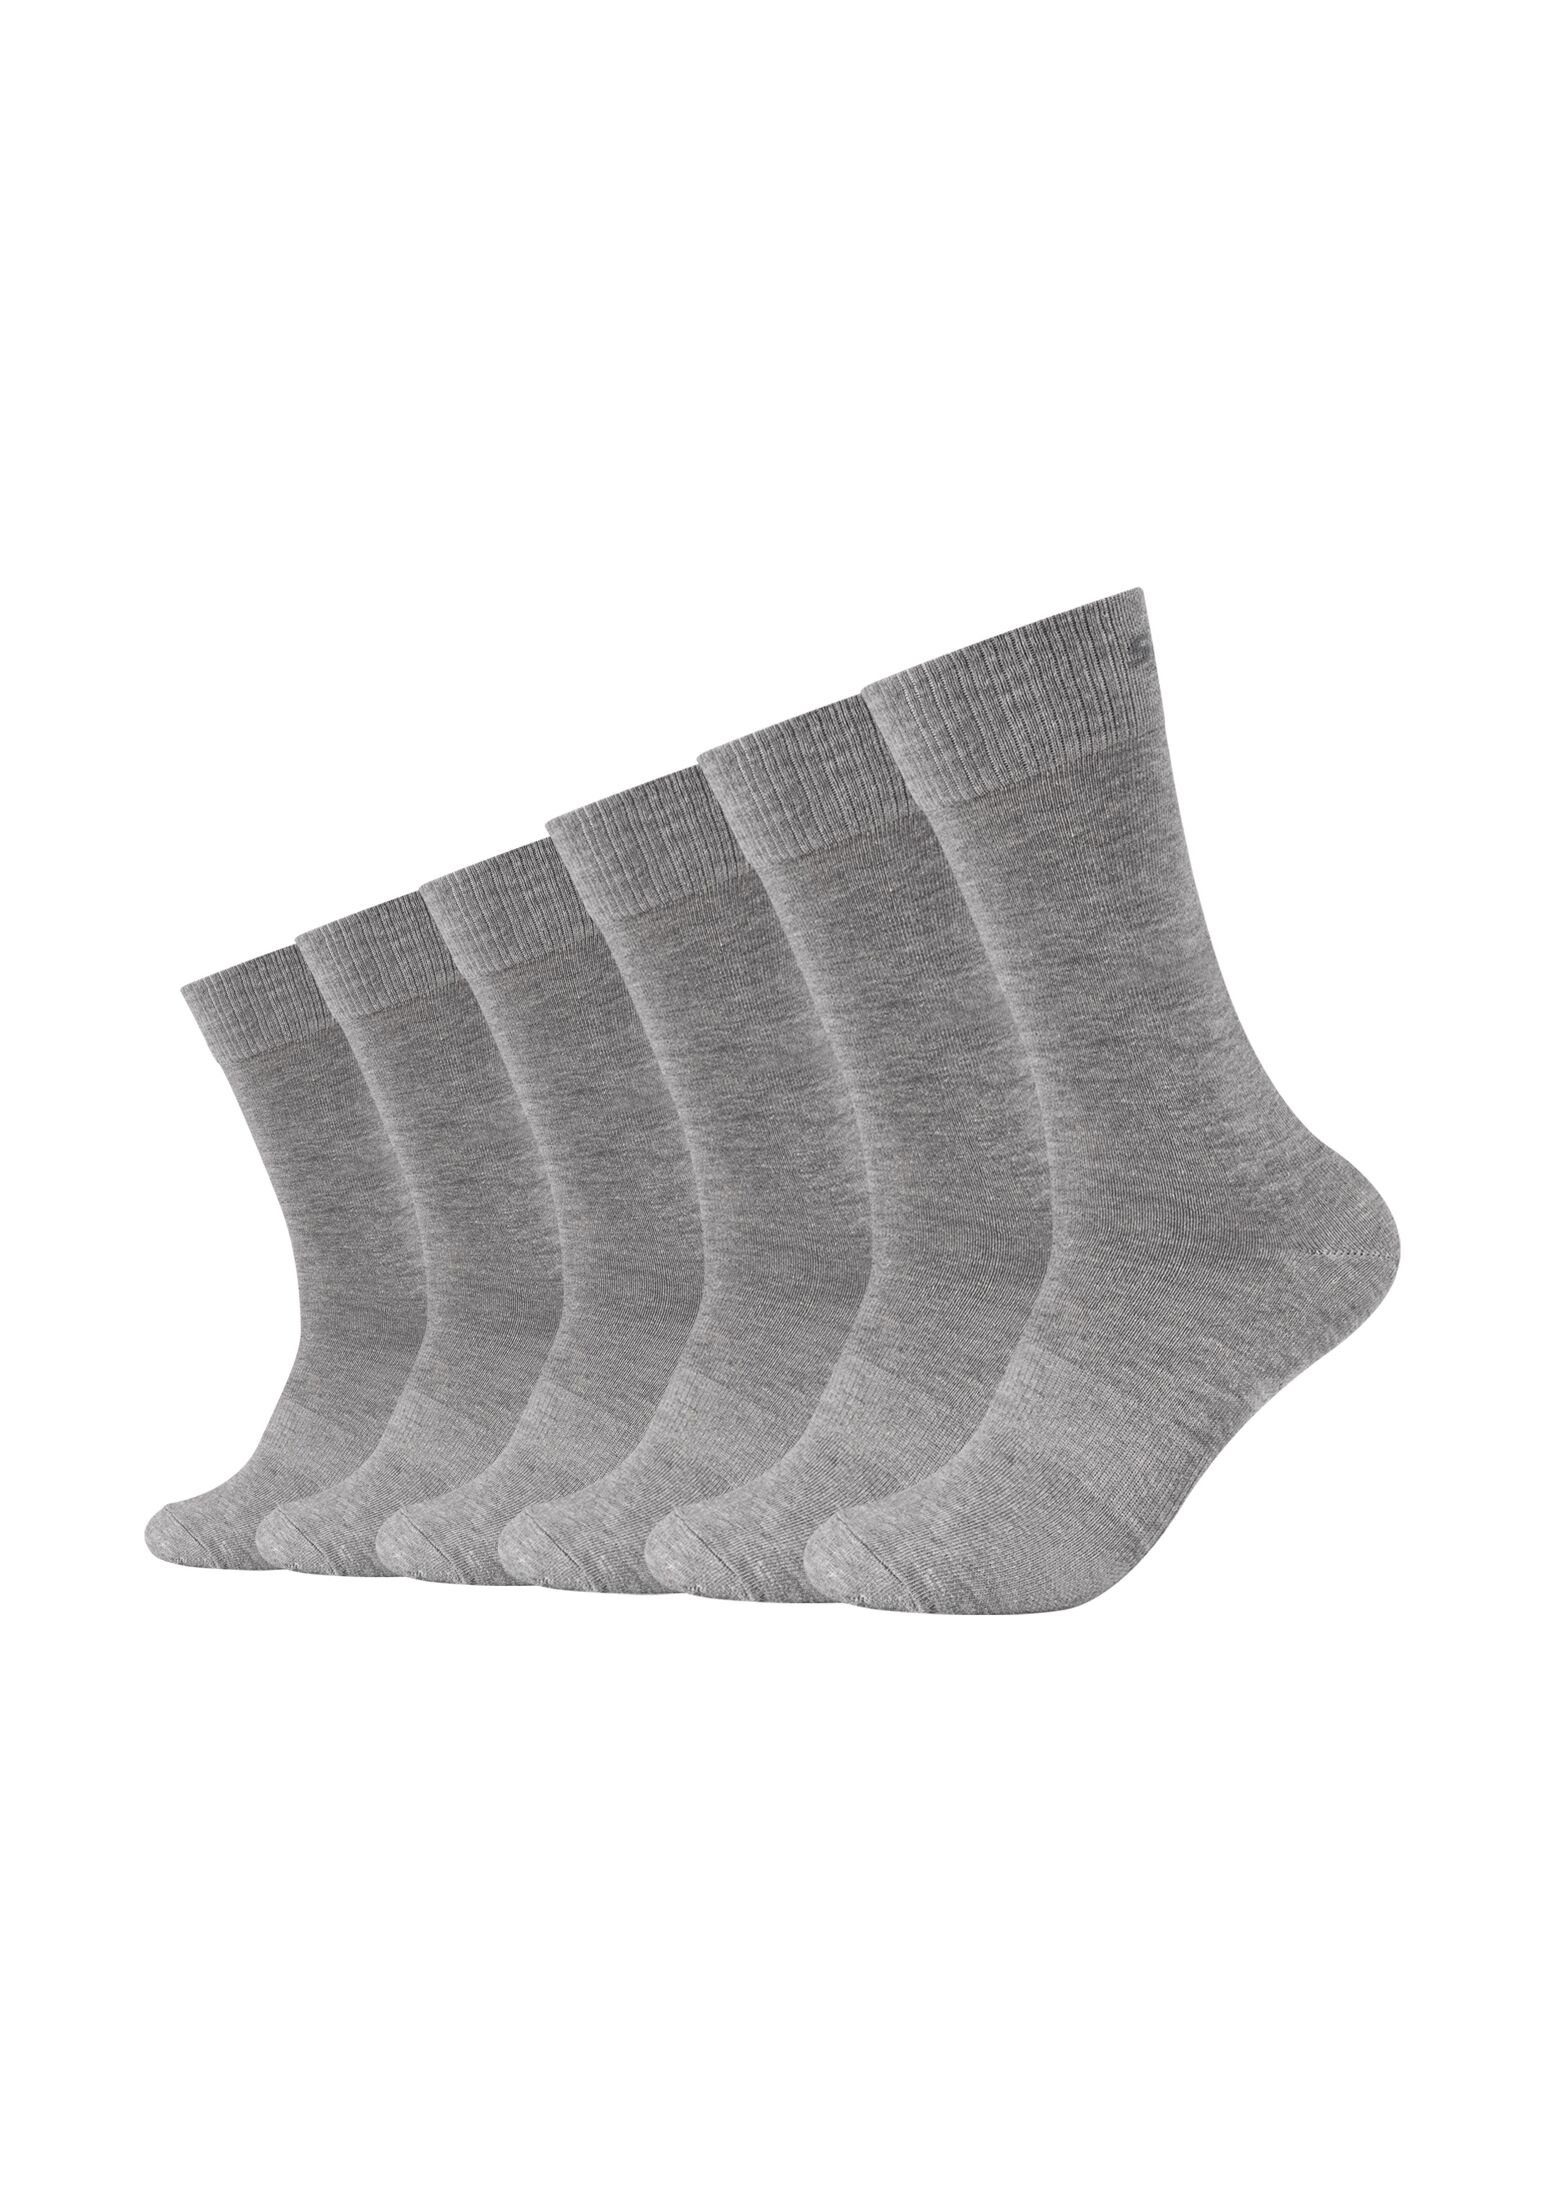 Skechers Socken Socken 6er Pack light grey melange